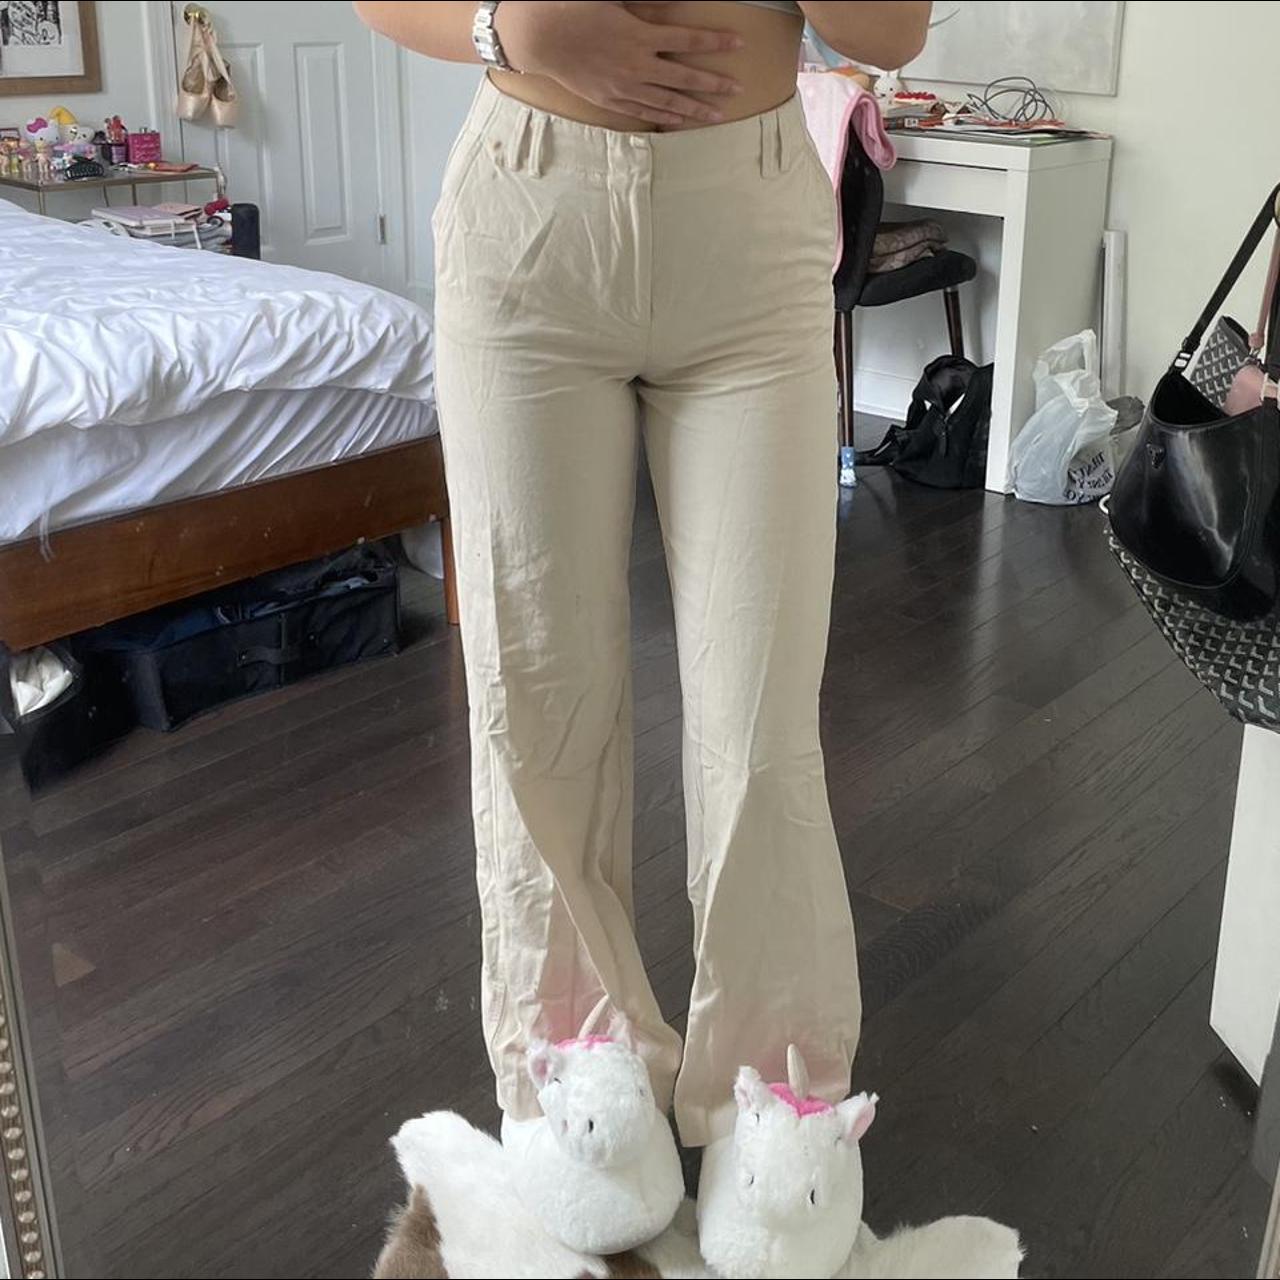 Zara pants Size xs Never worn Cute double belt - Depop